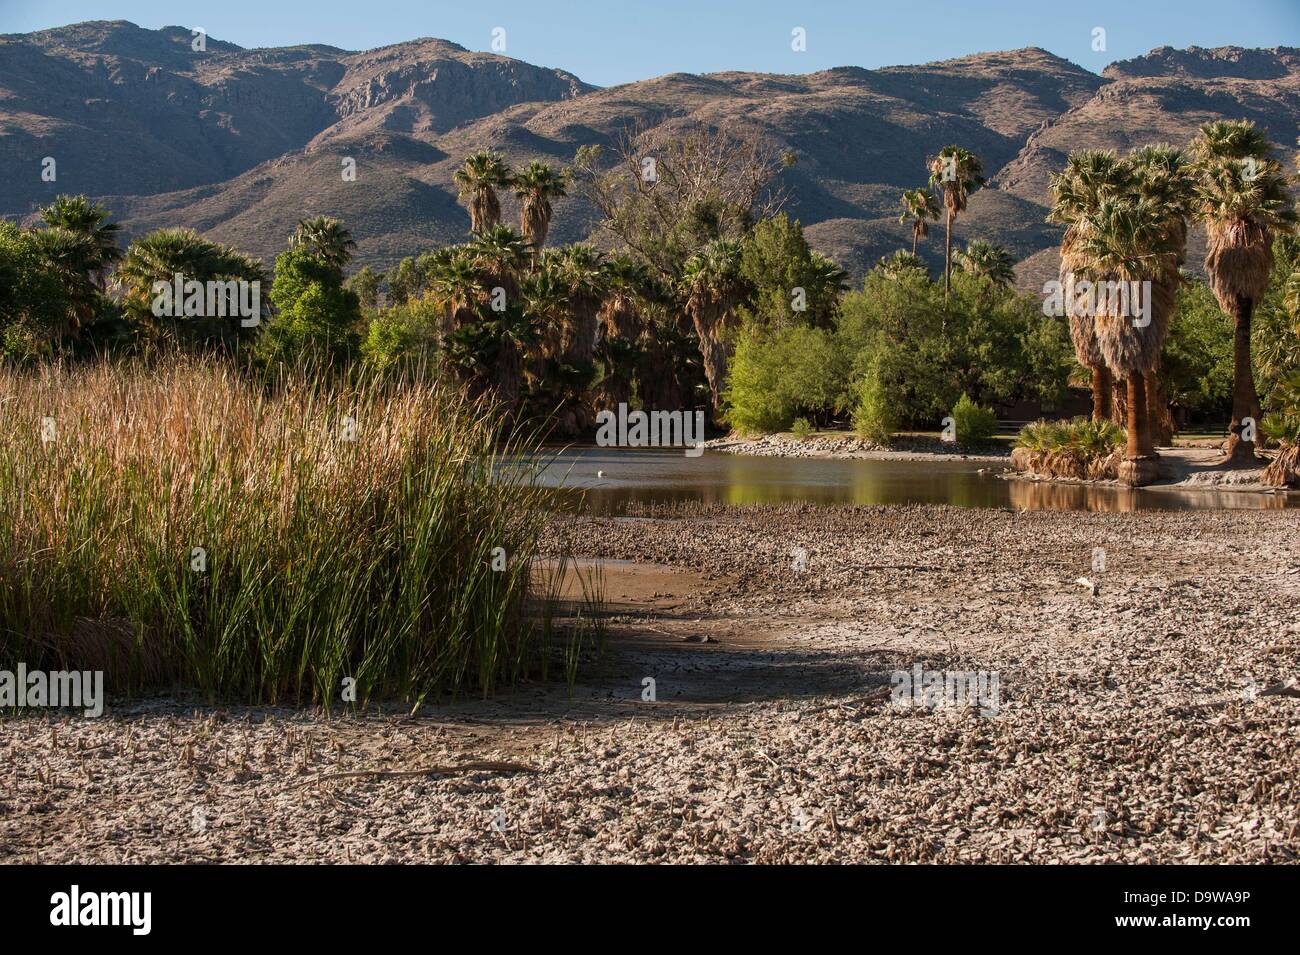 26 juin 2013 - Tucson, Arizona, United States - années de sécheresse est à l'origine de niveaux d'eau à Monterrey à Tucson (Arizona) pour tomber à des niveaux extrêmement bas. Le lac principal, ainsi qu'un autre débordement, sont alimentés par une source naturelle, la saison des pluies et de la fonte des neiges de l'écoulement à proximité des montagnes de Rincon. Le wetland habitat a été en déclin depuis la sécheresse de 2003-2004, selon le conseil d'appoint du parc. Comté de Pima, le gestionnaire du parc, a été pomper 55 000 gallons d'eau par jour dans le lac d'essayer de l'empêcher de s'assécher complètement, mais plus chaud, plus sec années semblent être en train de gagner la ba Banque D'Images